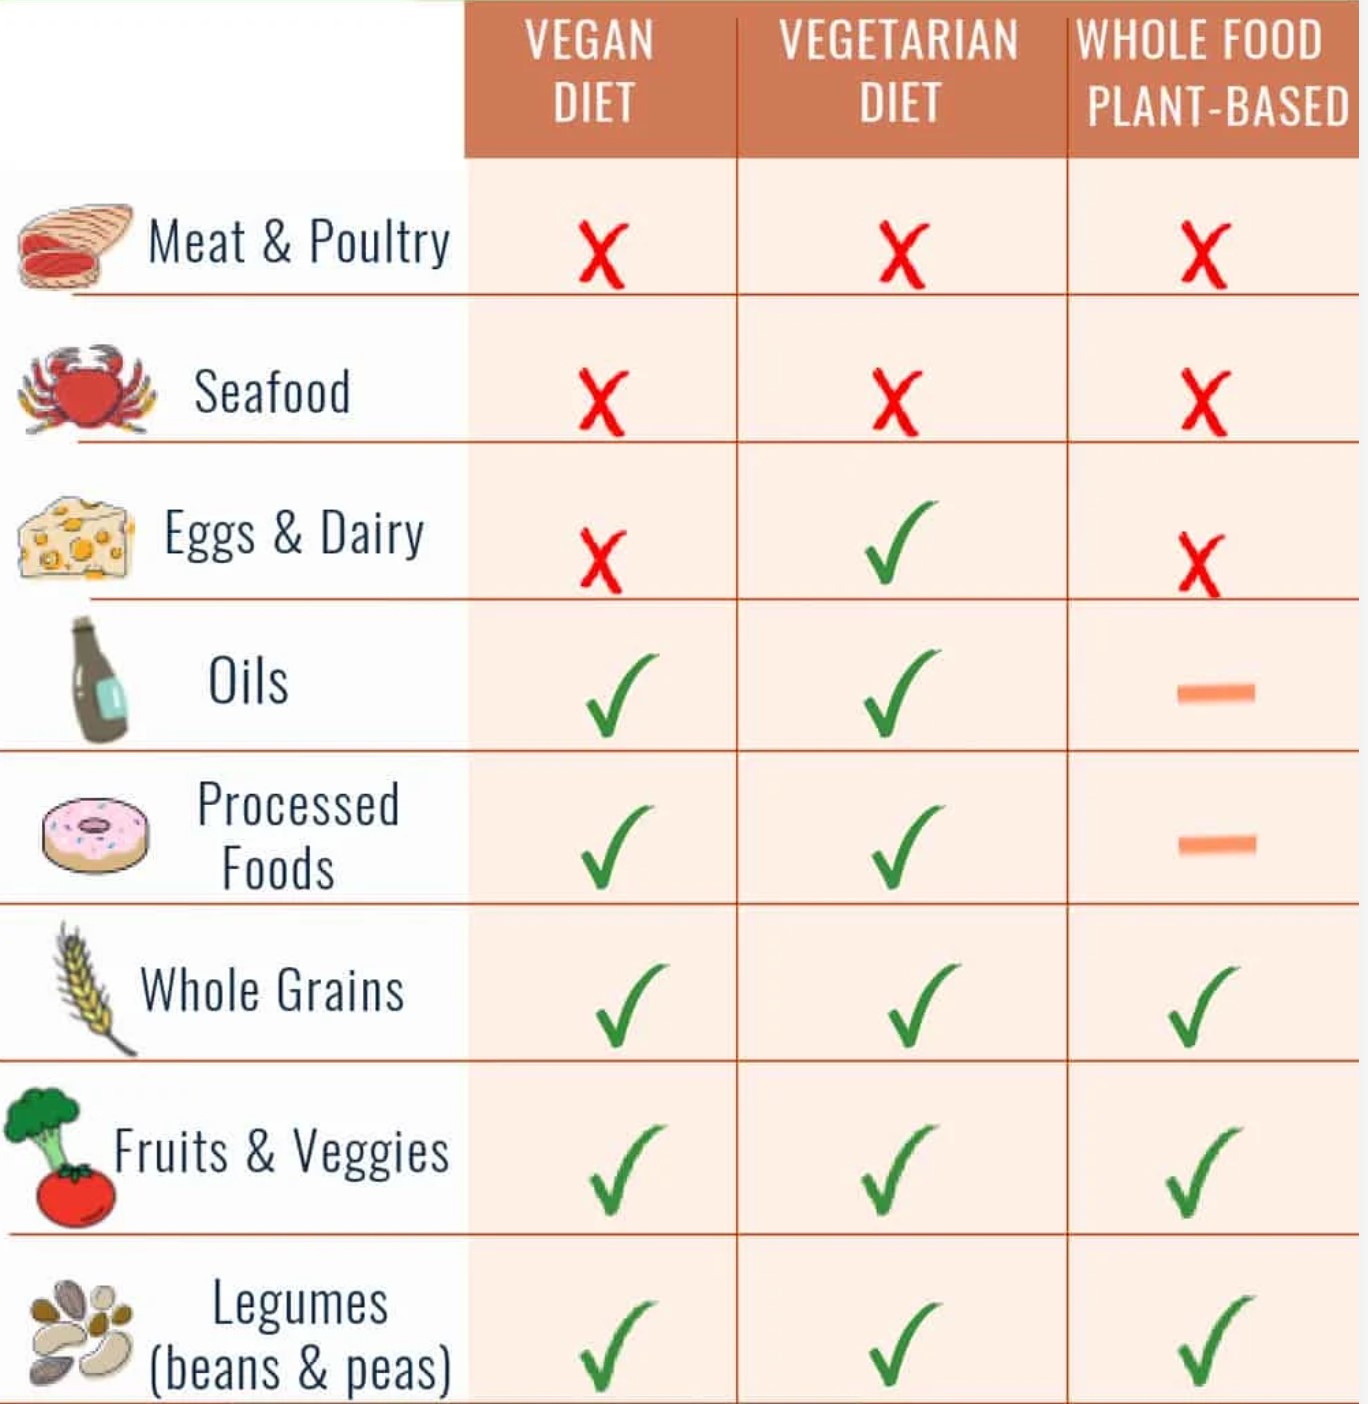 ヴィーガンとベジタリアン・WFPBが食べる食材の一覧を表した図